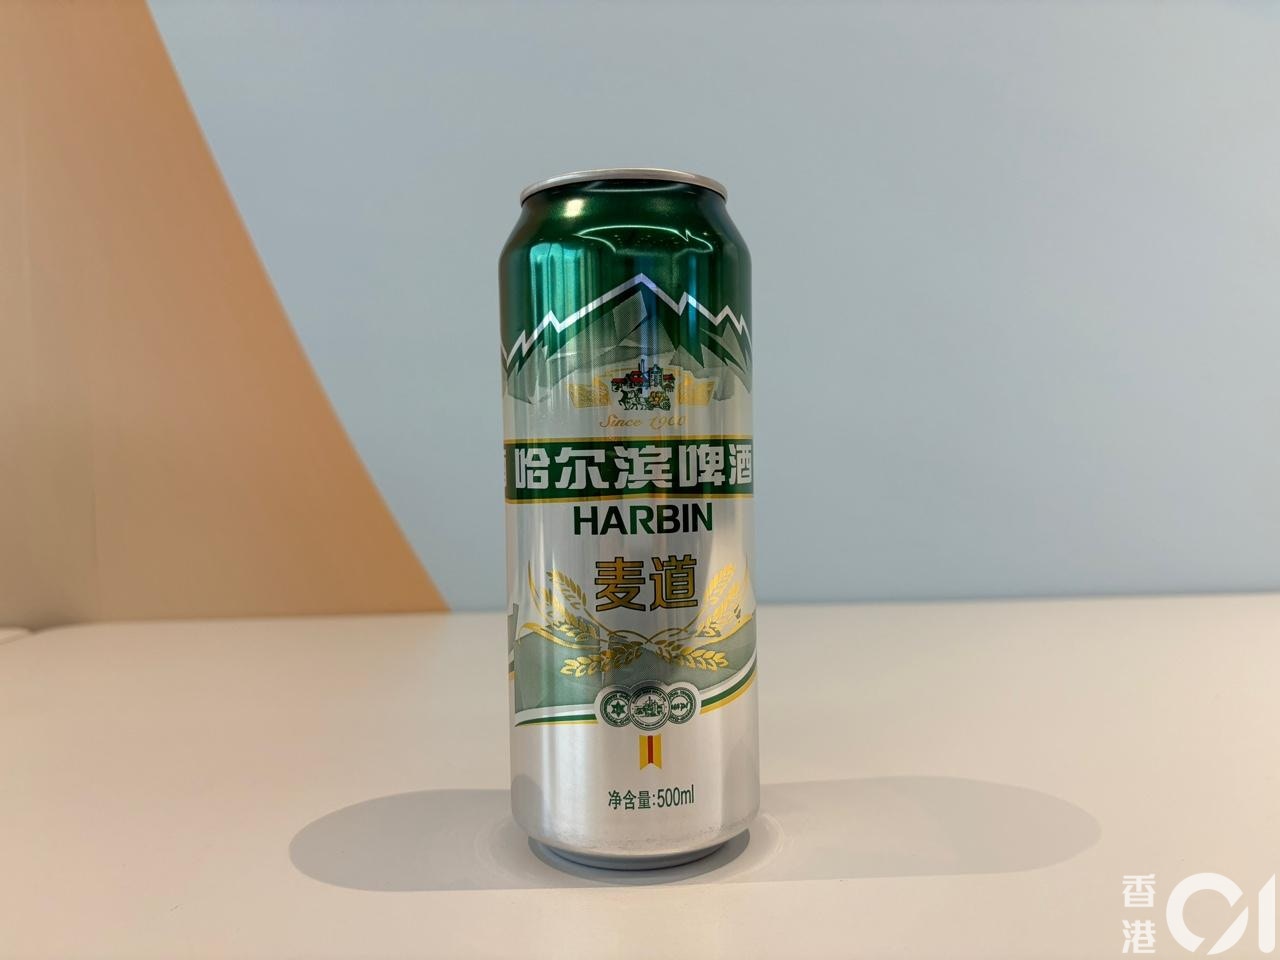 哈尔滨 HARBIN 的麦道啤酒，每罐$6，评分为2.5分。（梁祖儿摄）